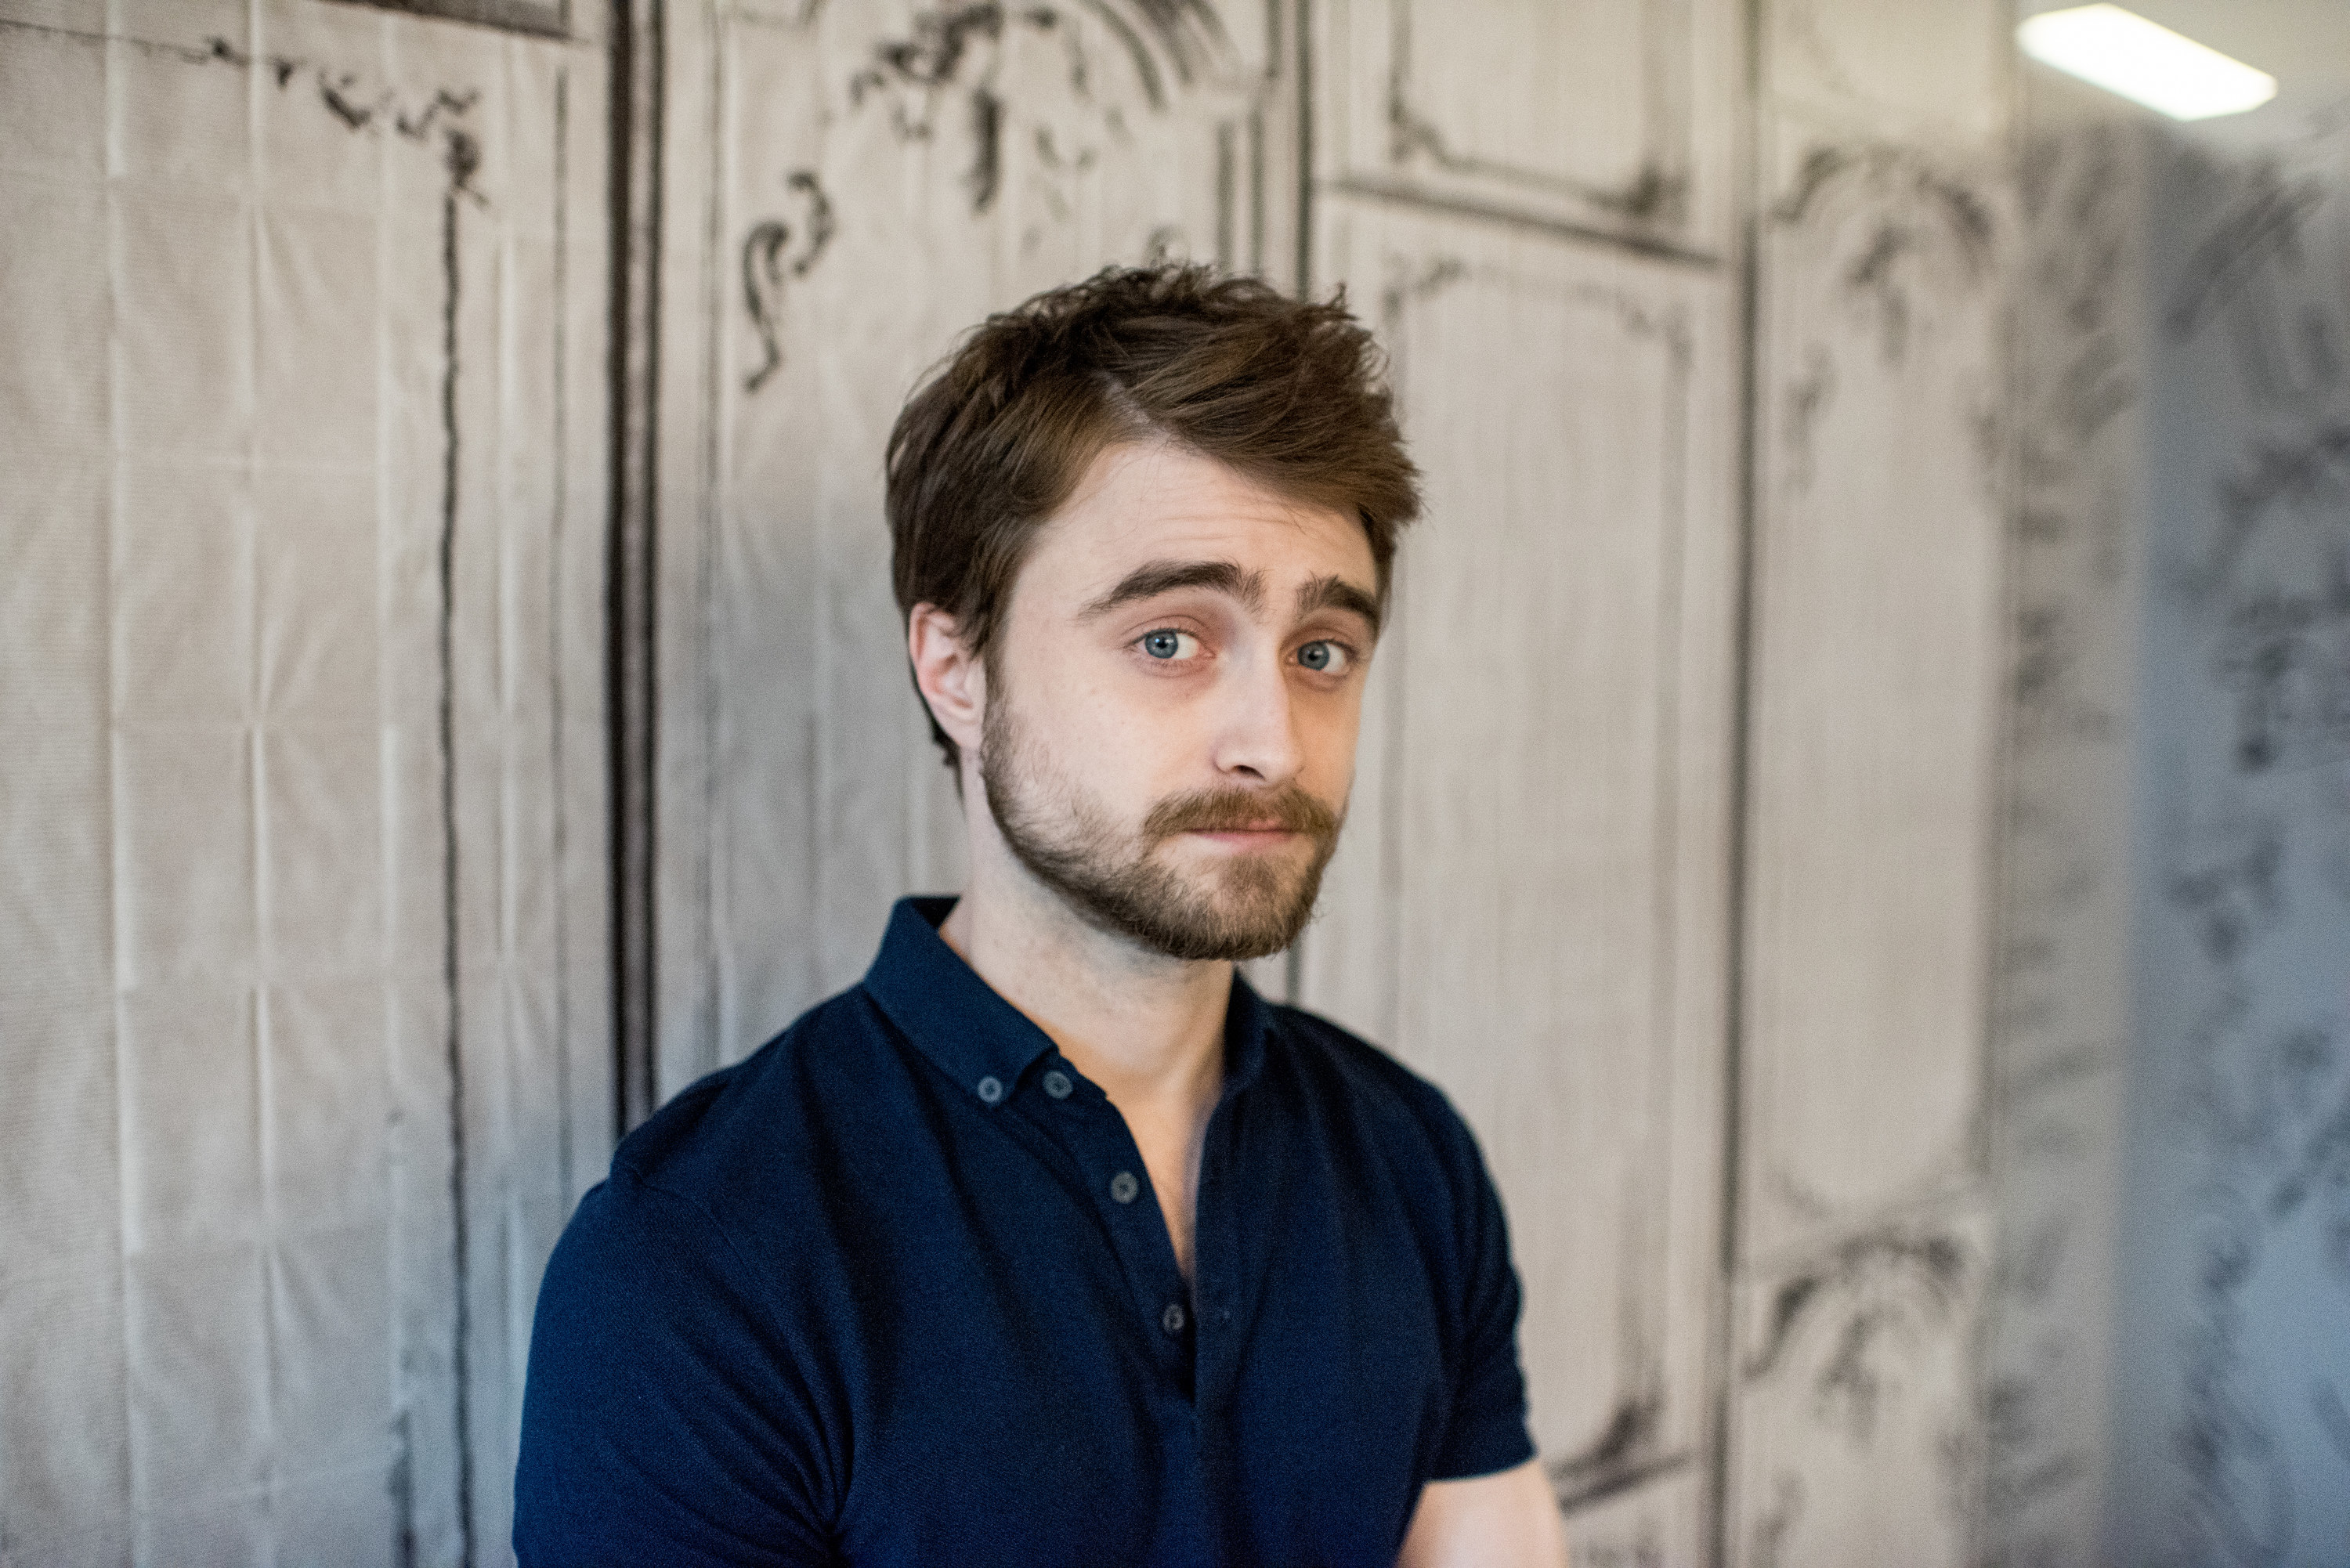 Daniel Radcliffe poses for a portrait shot